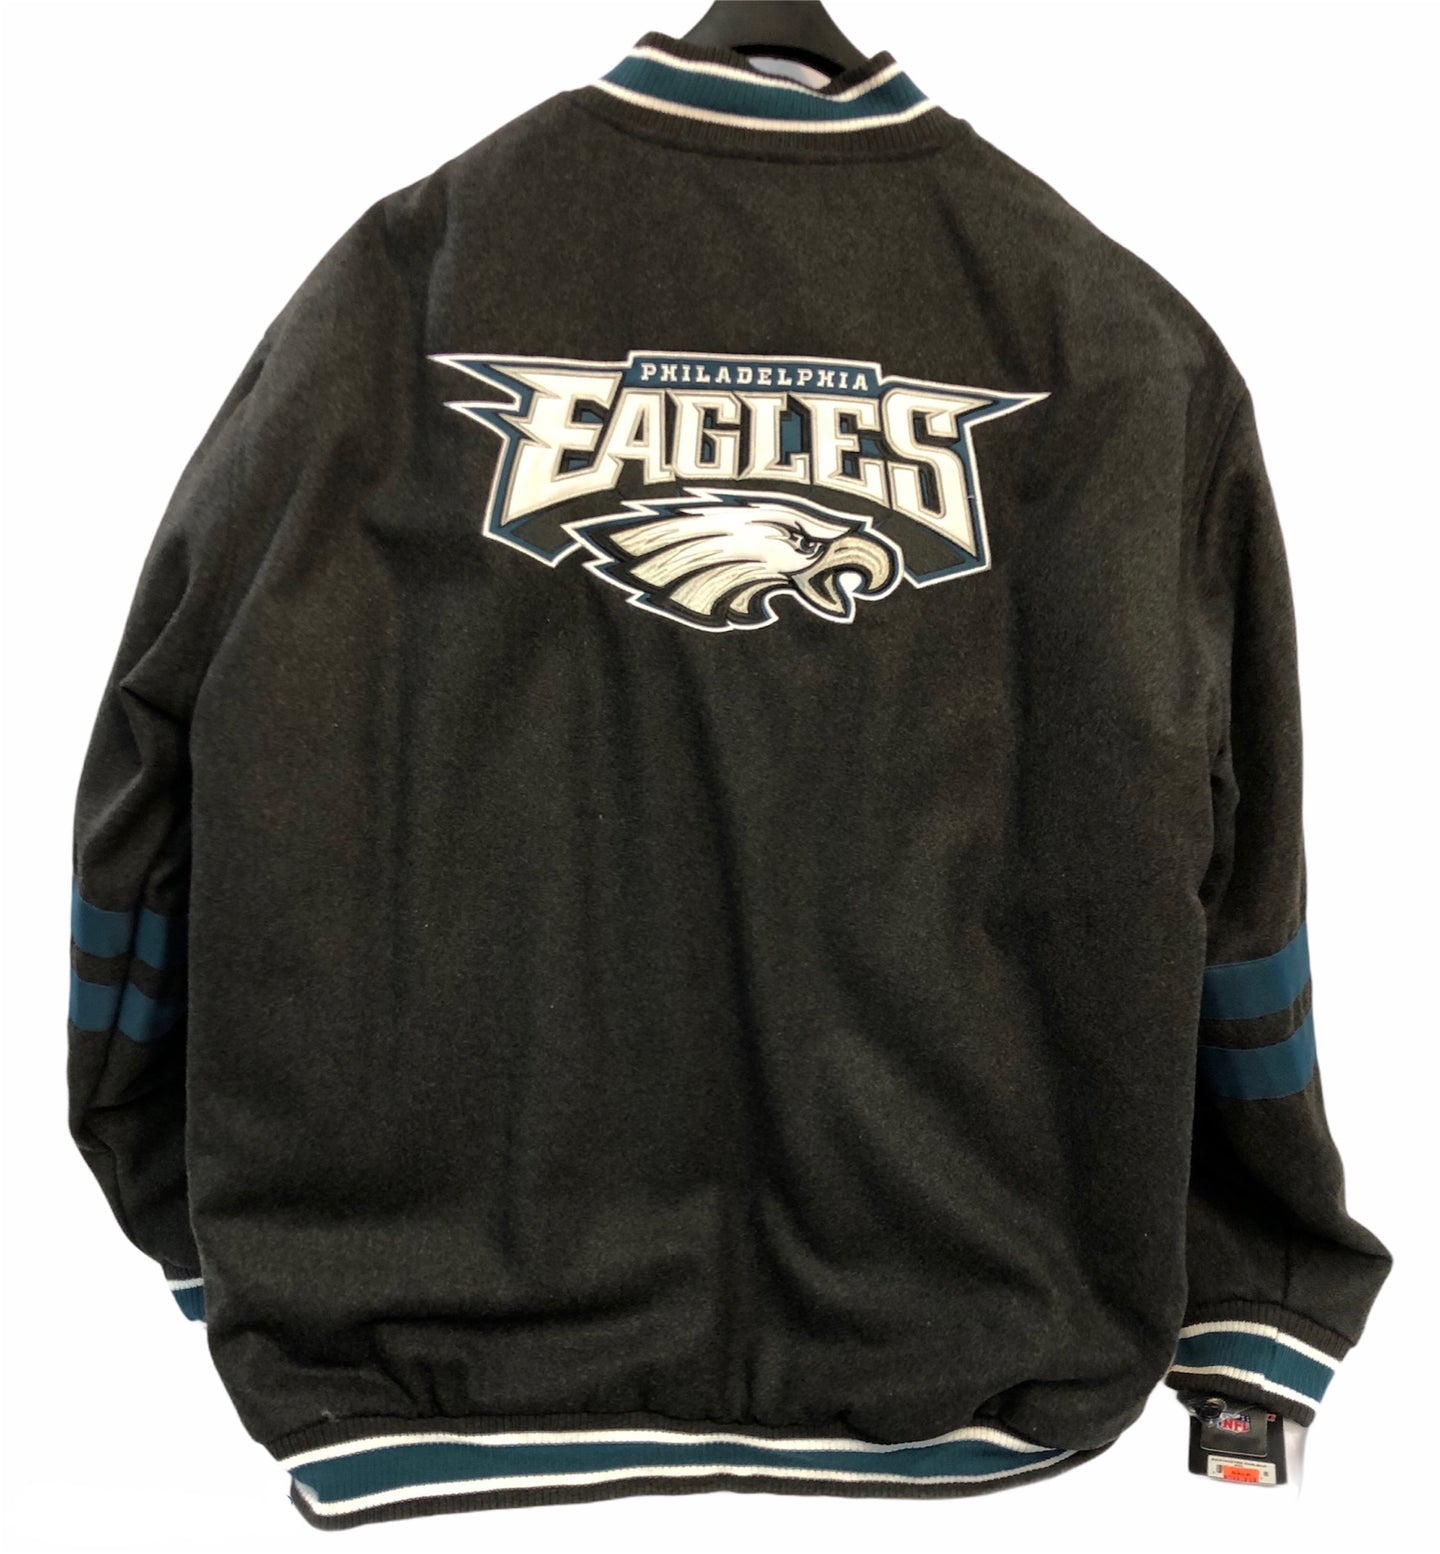 Philadelphia Eagles Jacket